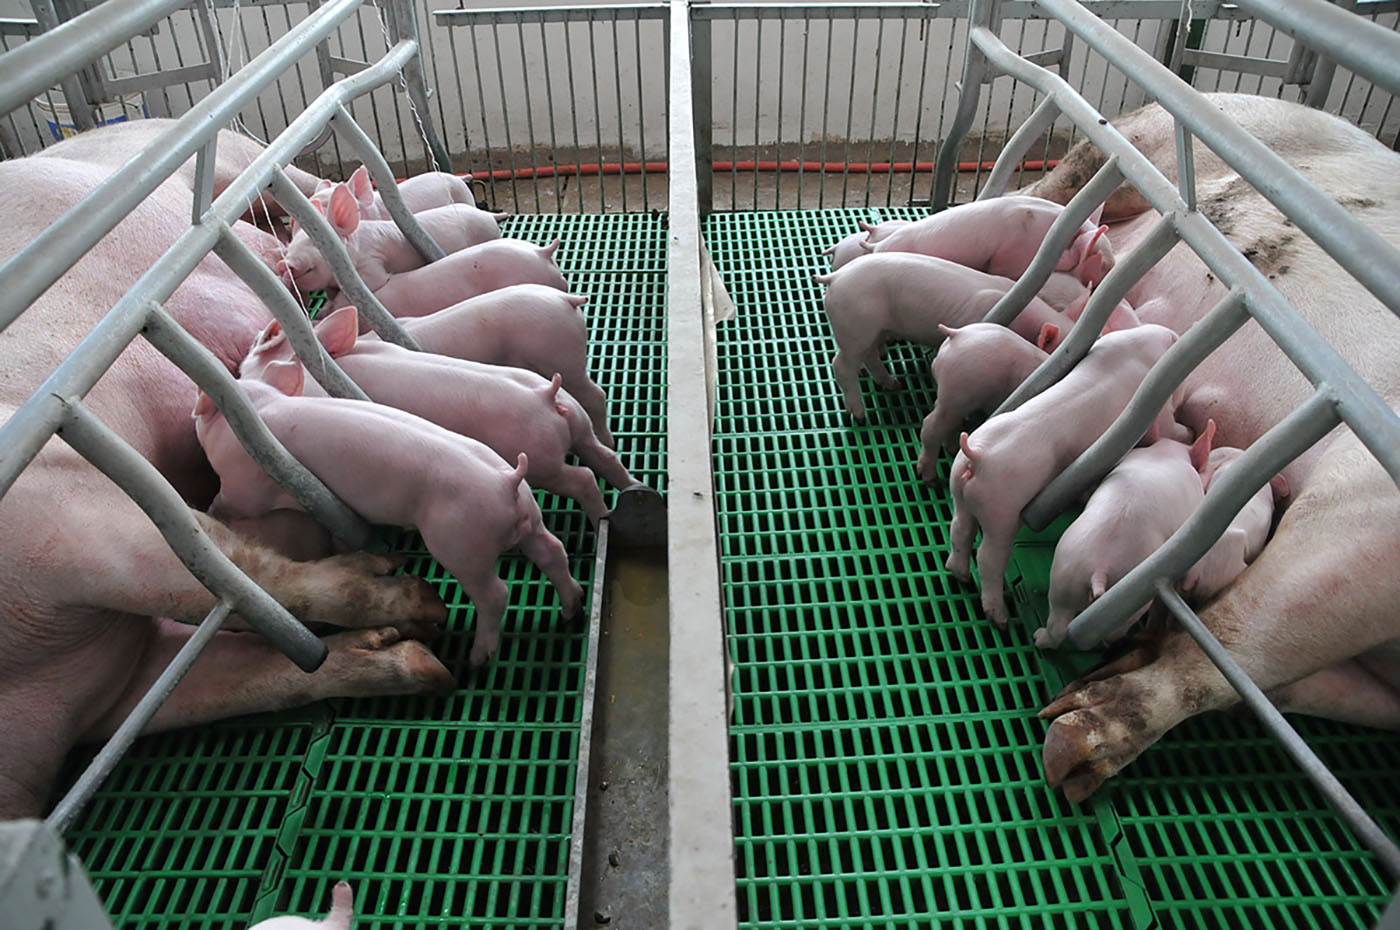 Gran parte de la reproducción en la porcicultura depende de la inseminación artificial, que por lo general se hace con semen refrigerado. Foto: archivo Unimedios.